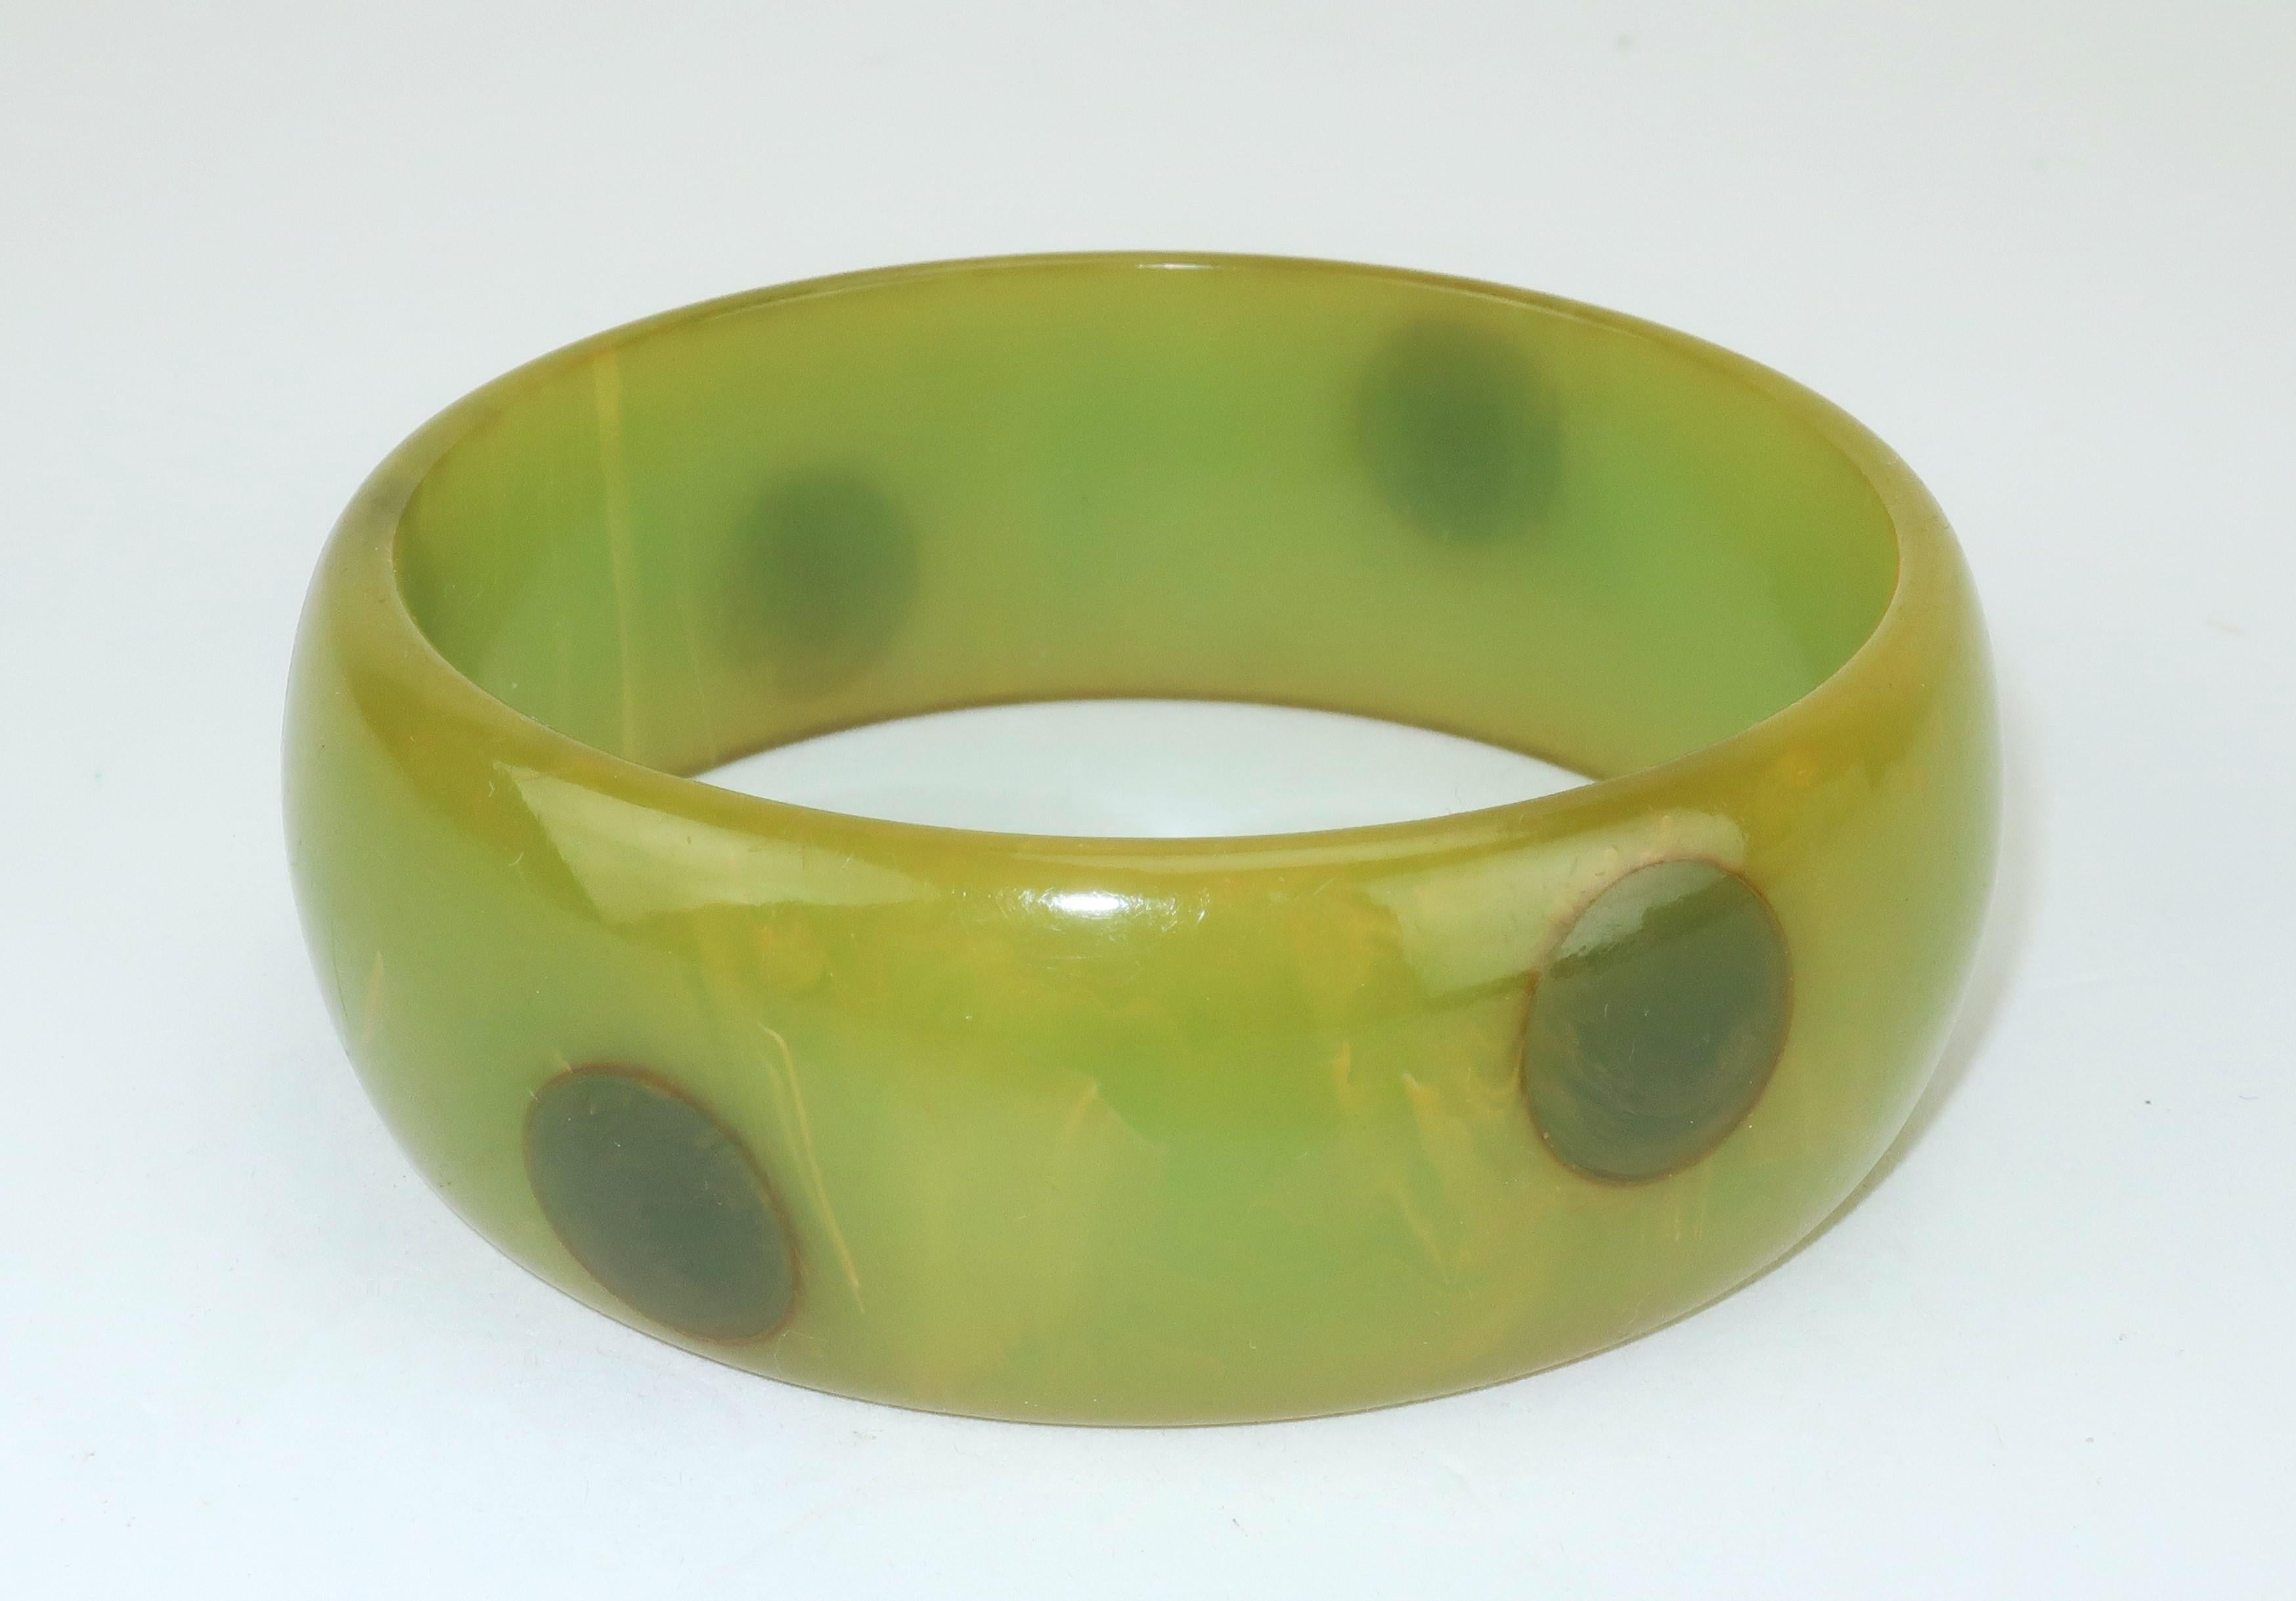 Armreif aus Bakelit aus den 1940er Jahren in Grüntönen von Olive bis Wald mit marmoriertem Effekt und einem Hauch von Gelb.  Das Armband ist mit einem Polka-Dot-Muster verziert, das an 